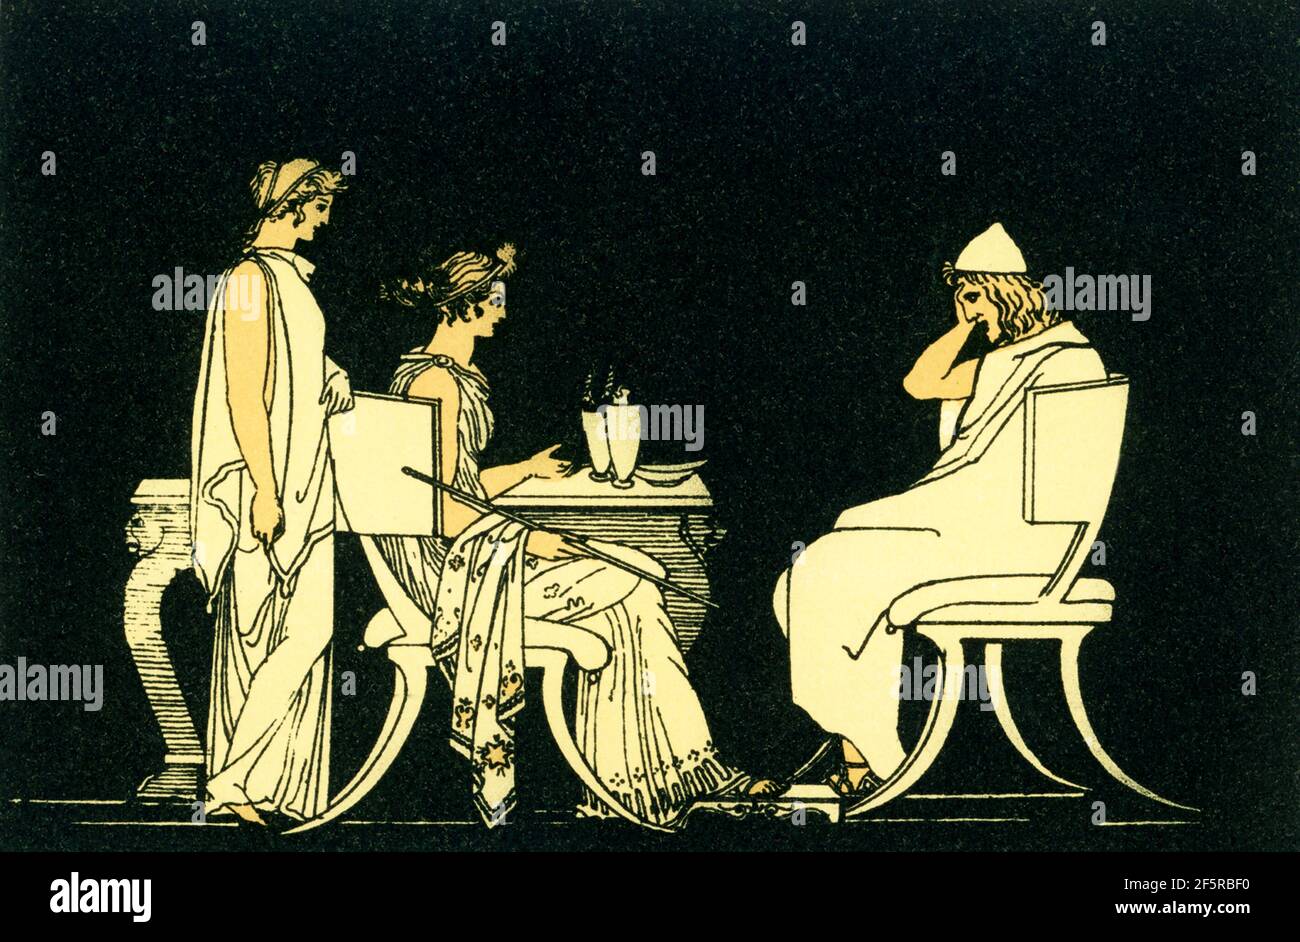 Esta ilustración de 1880s acompañó un libro sobre Homero y sus epopeyas, la Ilíada y la Odisea. Muestra la escena con el héroe griego Odysseus (Ulises) en la mesa de Circe. Según la antigua mitología griega, Circe era un conocido encanto. Hija de Helios, ella cambió a los compañeros de Odiseo en cerdo. Odysseus hizo que Circe rompiese el hechizo. Foto de stock